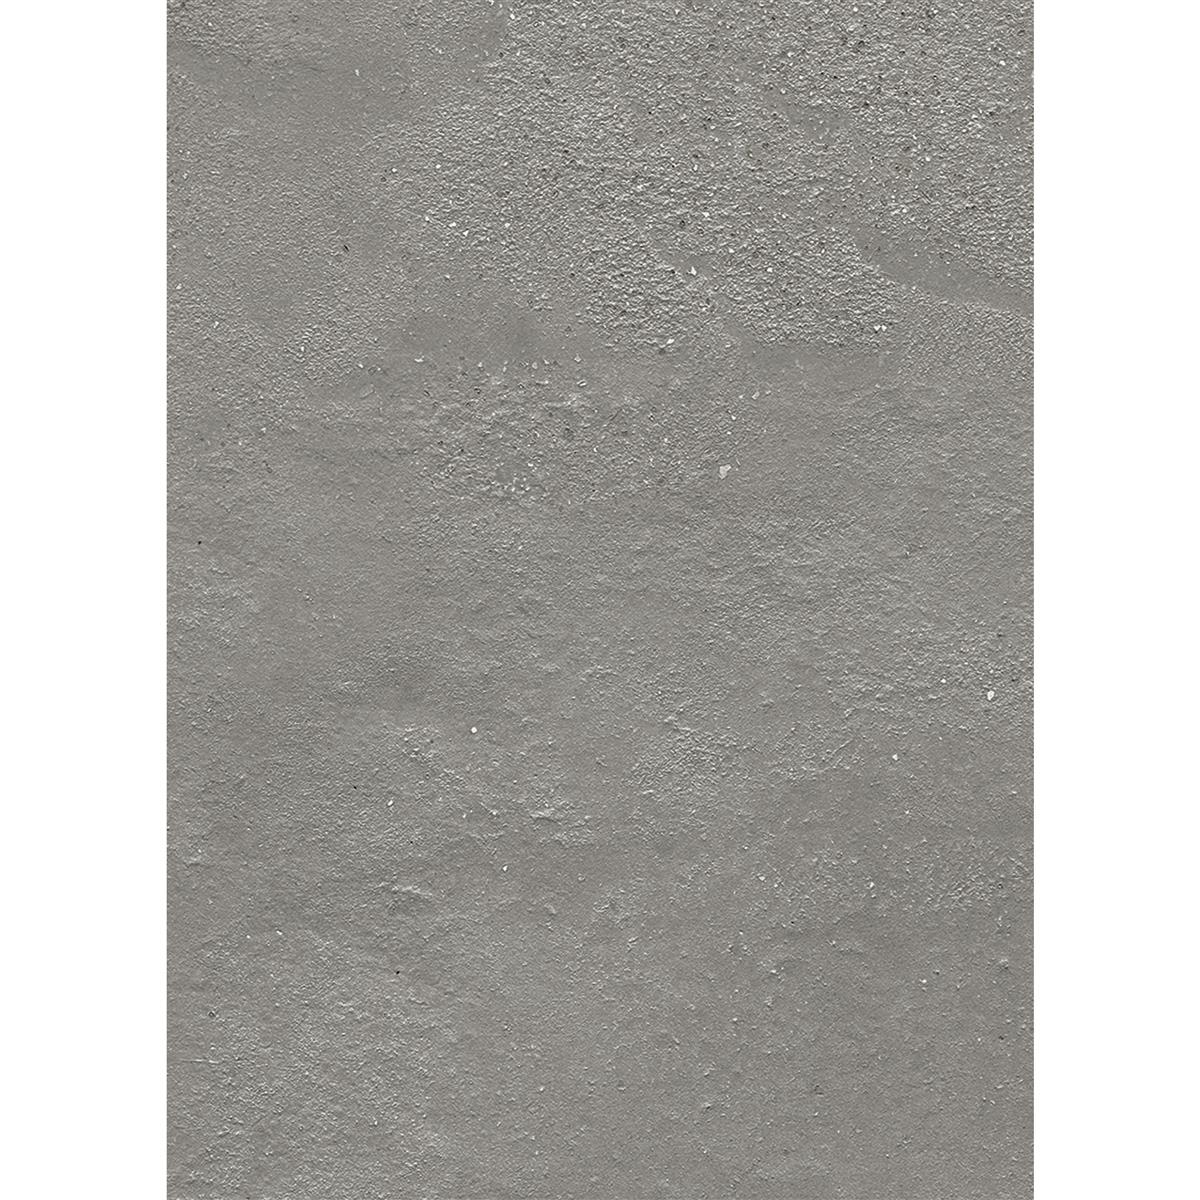 Piastrelle Malibu Cemento Ottica Grigio Chiaro 60x120cm